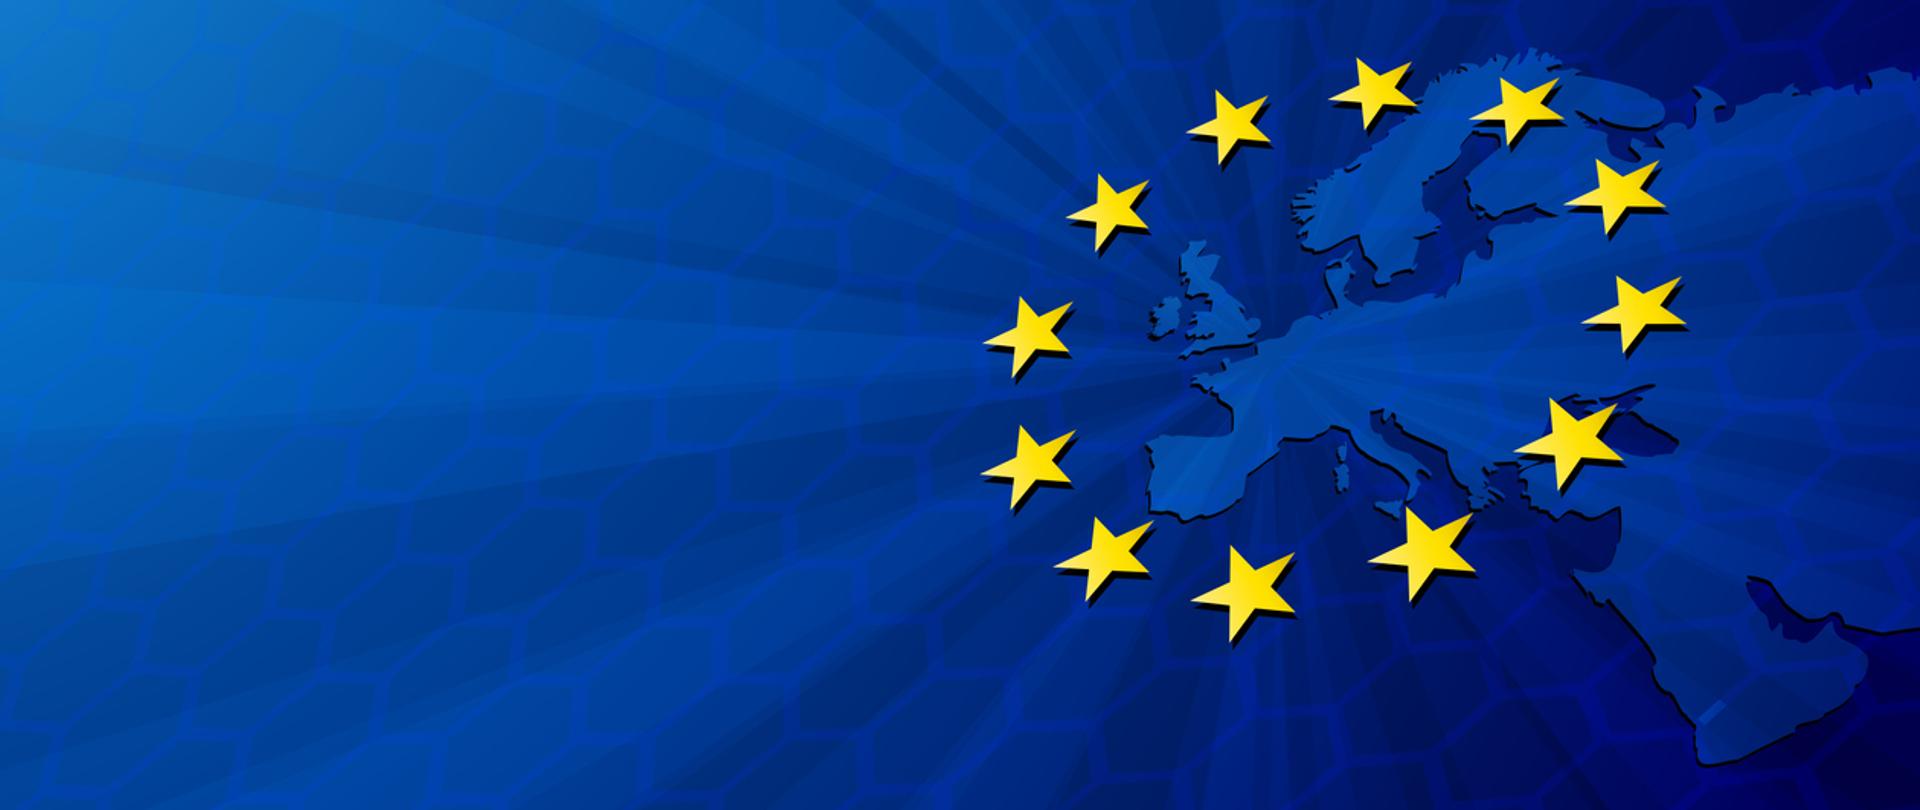 Unia Europejska. Wektor mapa Europy z flagą Unii Europejskiej. Niebieskie tło i żółte gwiazdy.